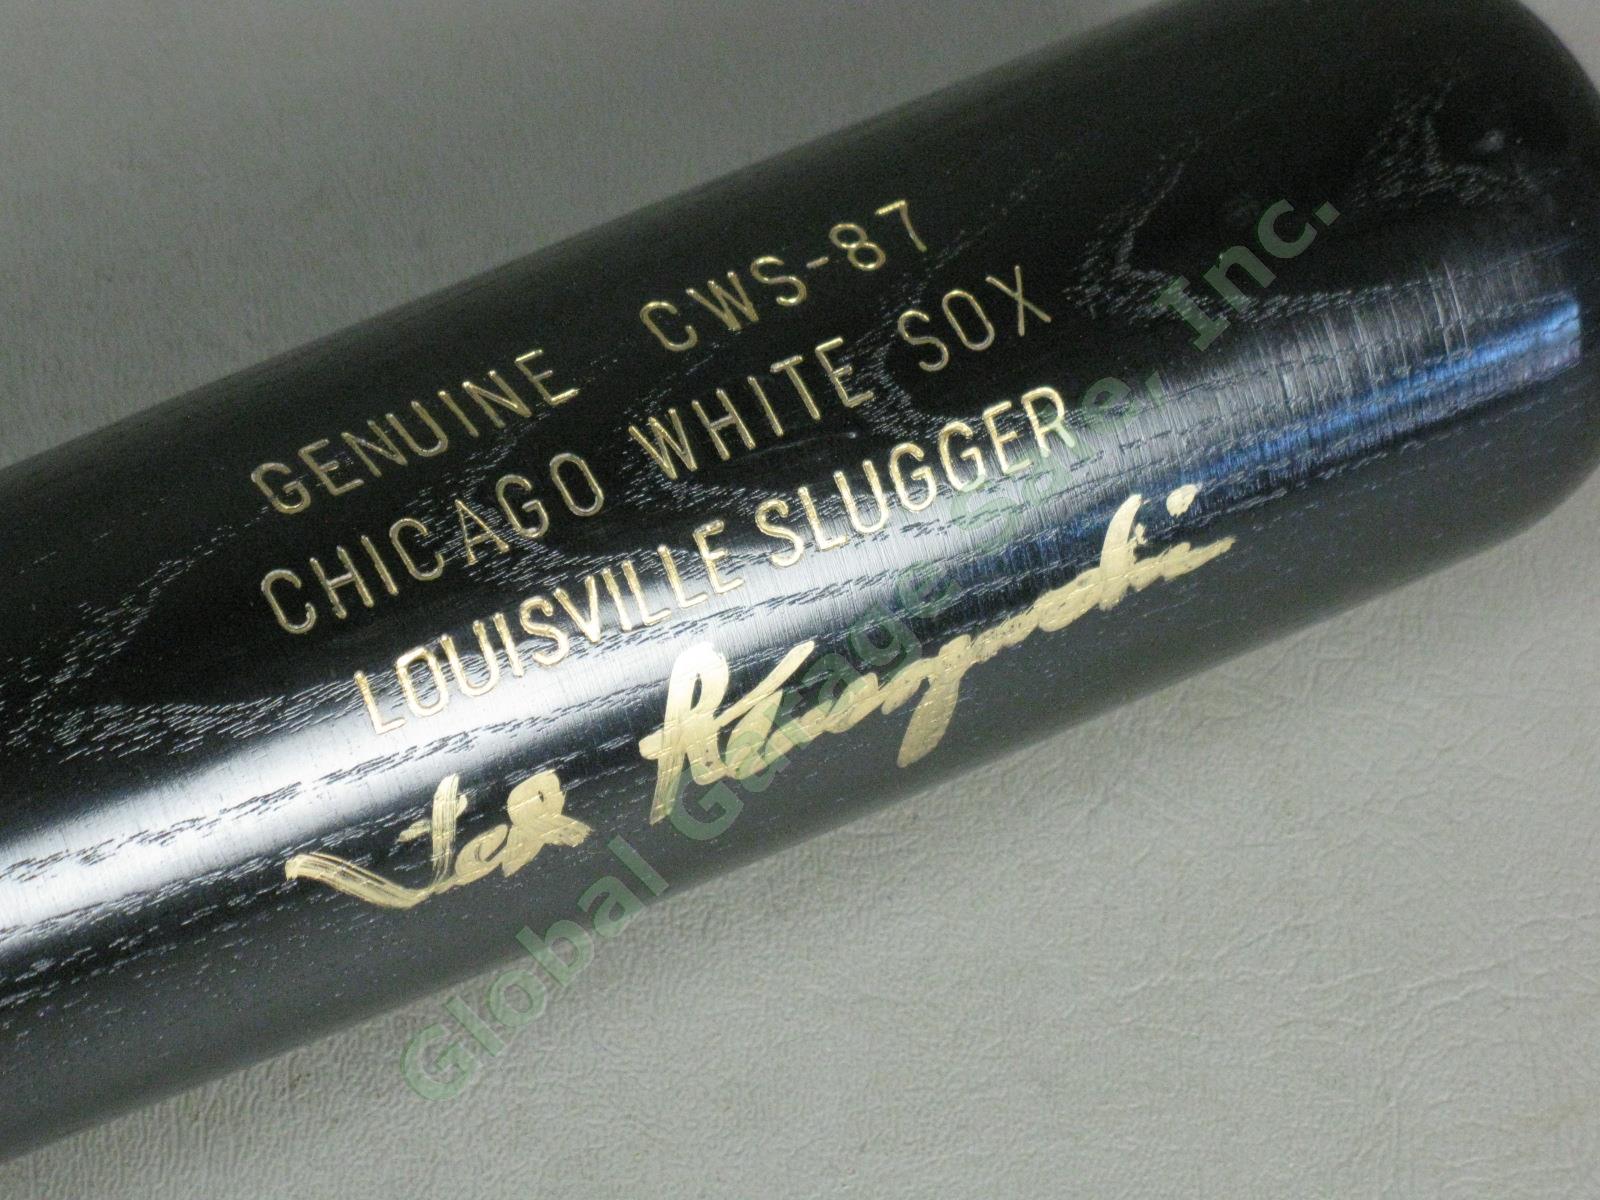 Ted Kluszewski Signed Baseball Bat CWS-87 Chicago White Sox Louisville Slugger 2